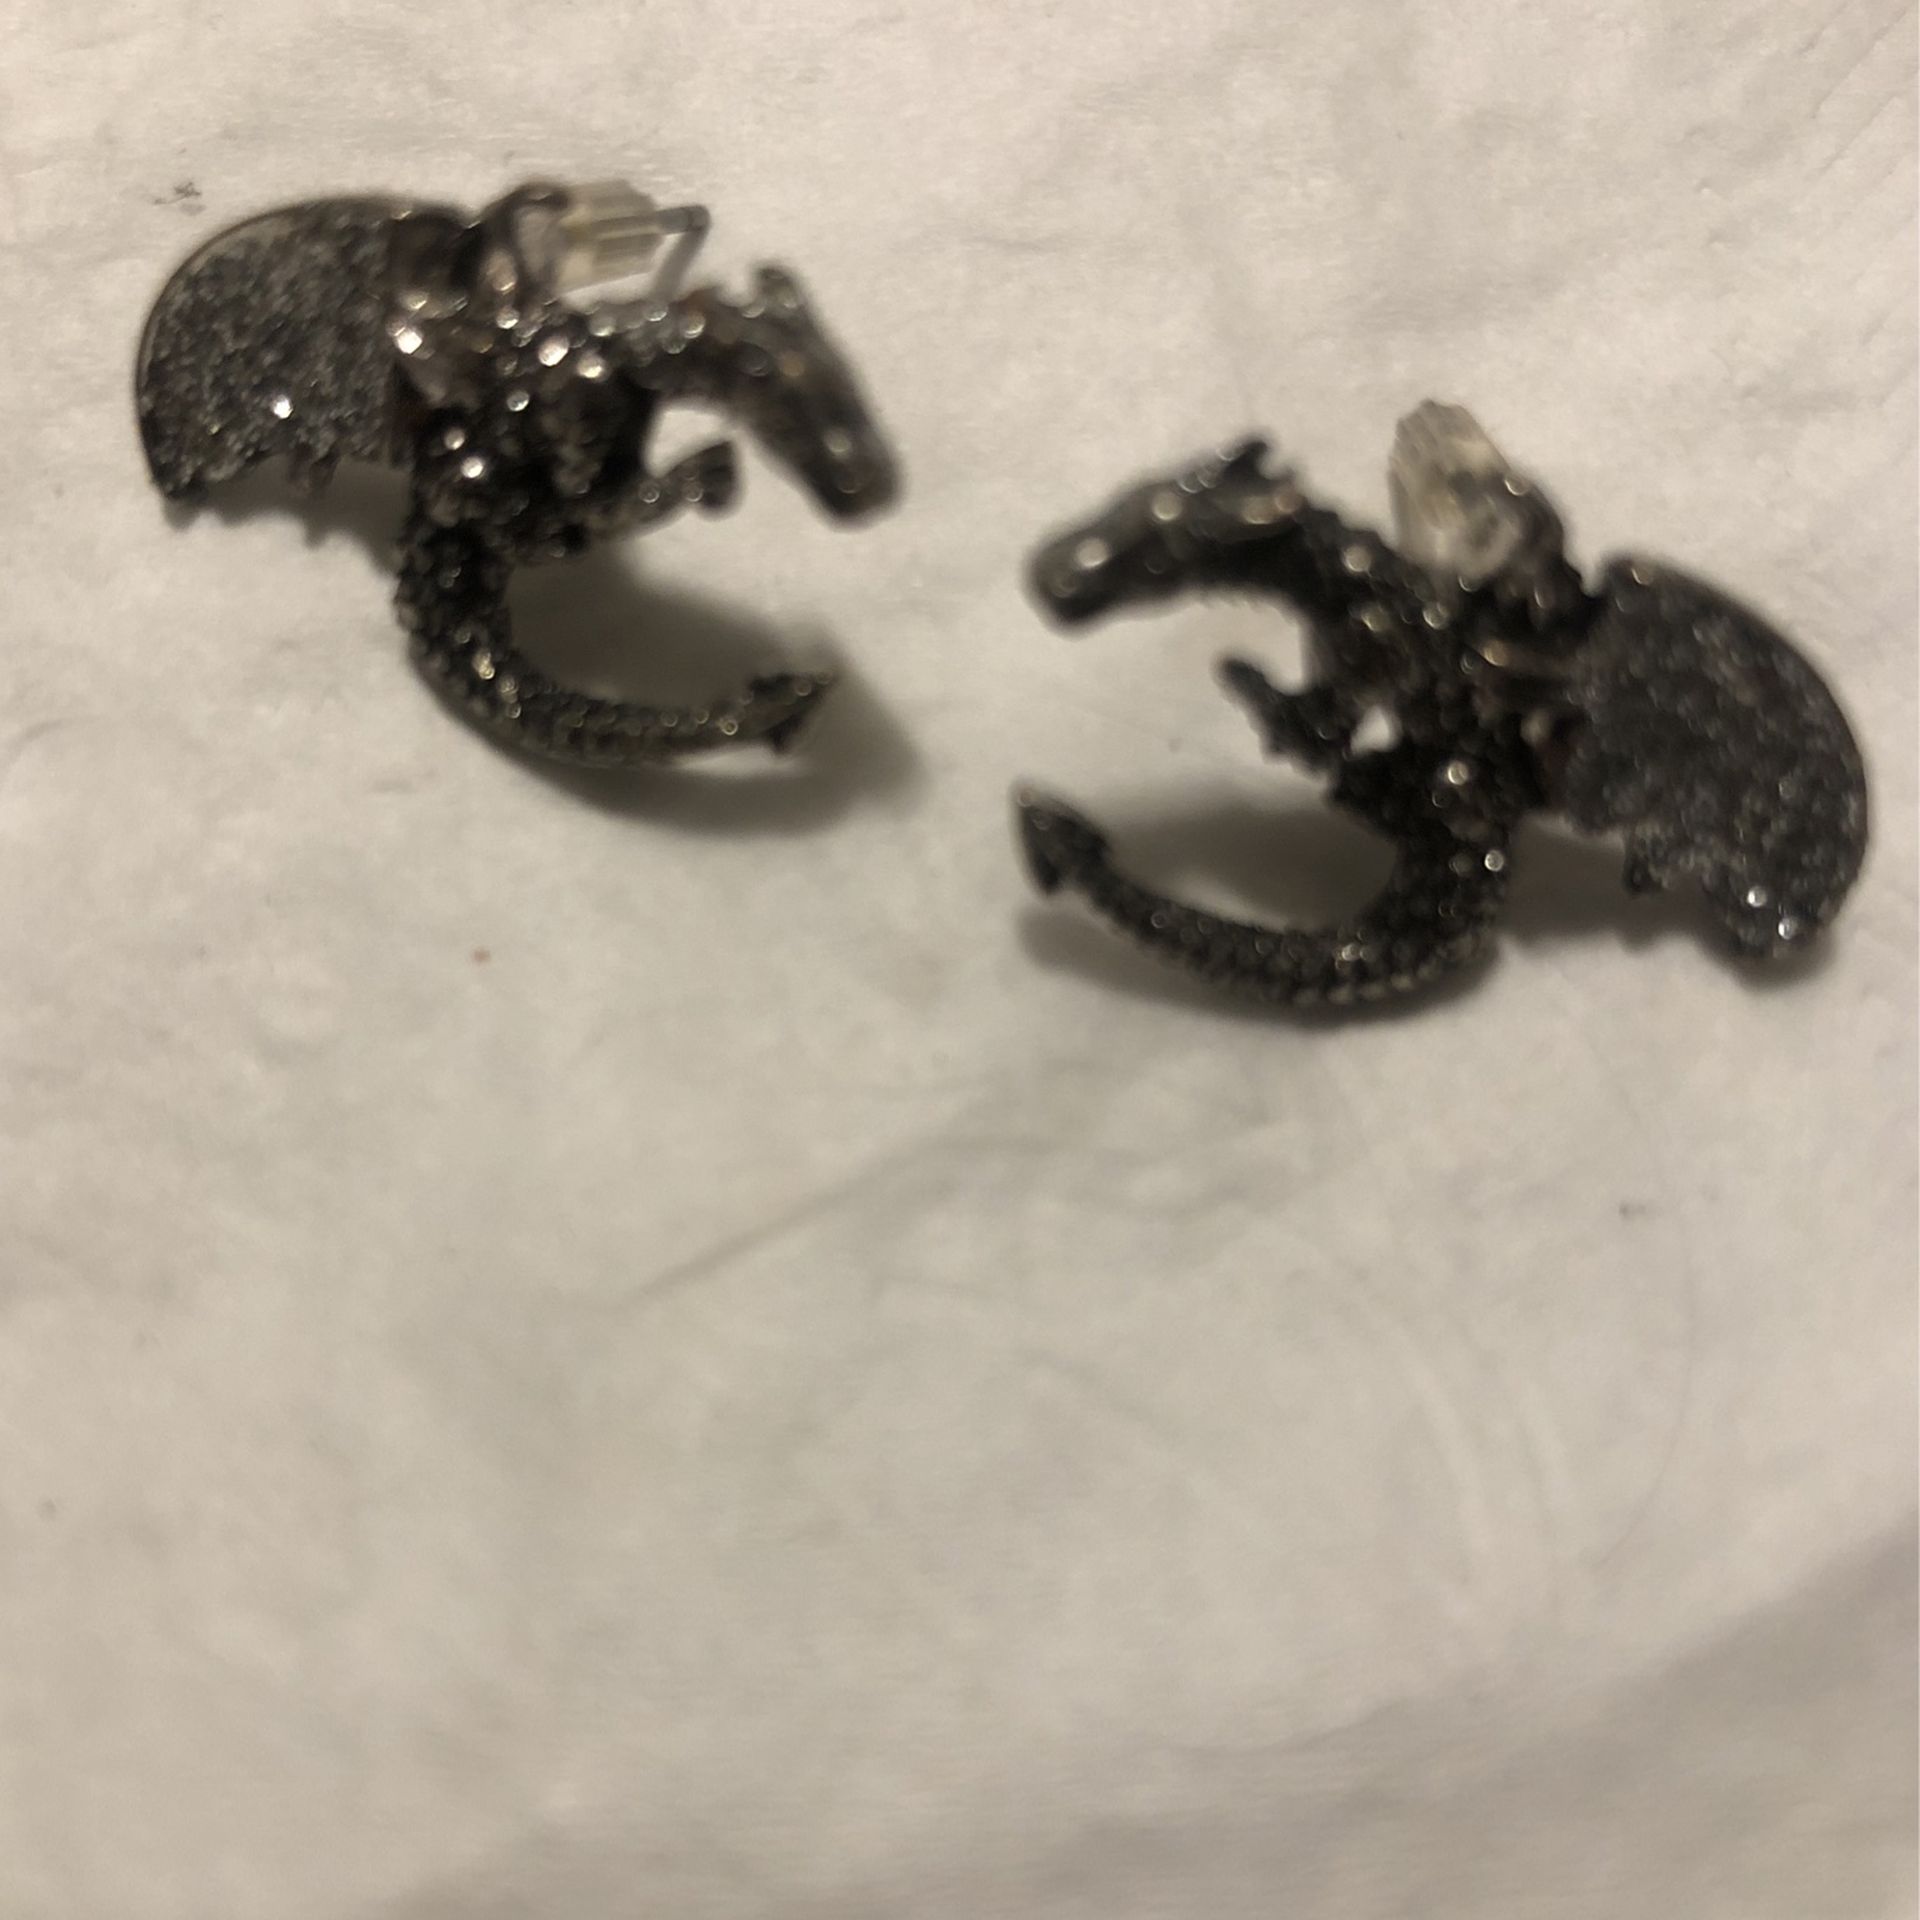 New Dragon Earrings 